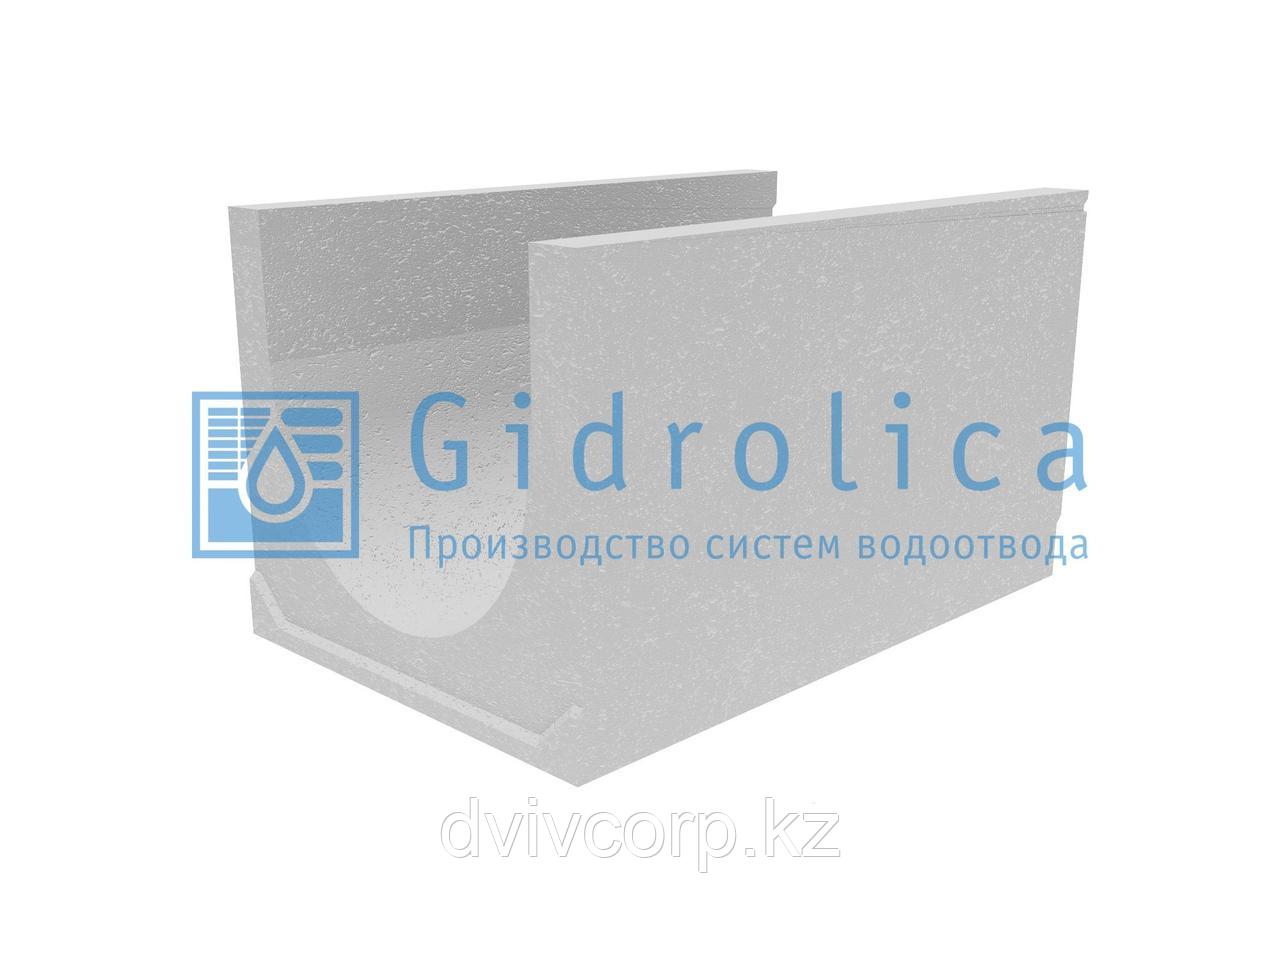 Лоток водоотводный бетонный коробчатый (СО-500мм), с уклоном 0,5%  КUу 100.65(50).59(50) - BGU-XL, № 28